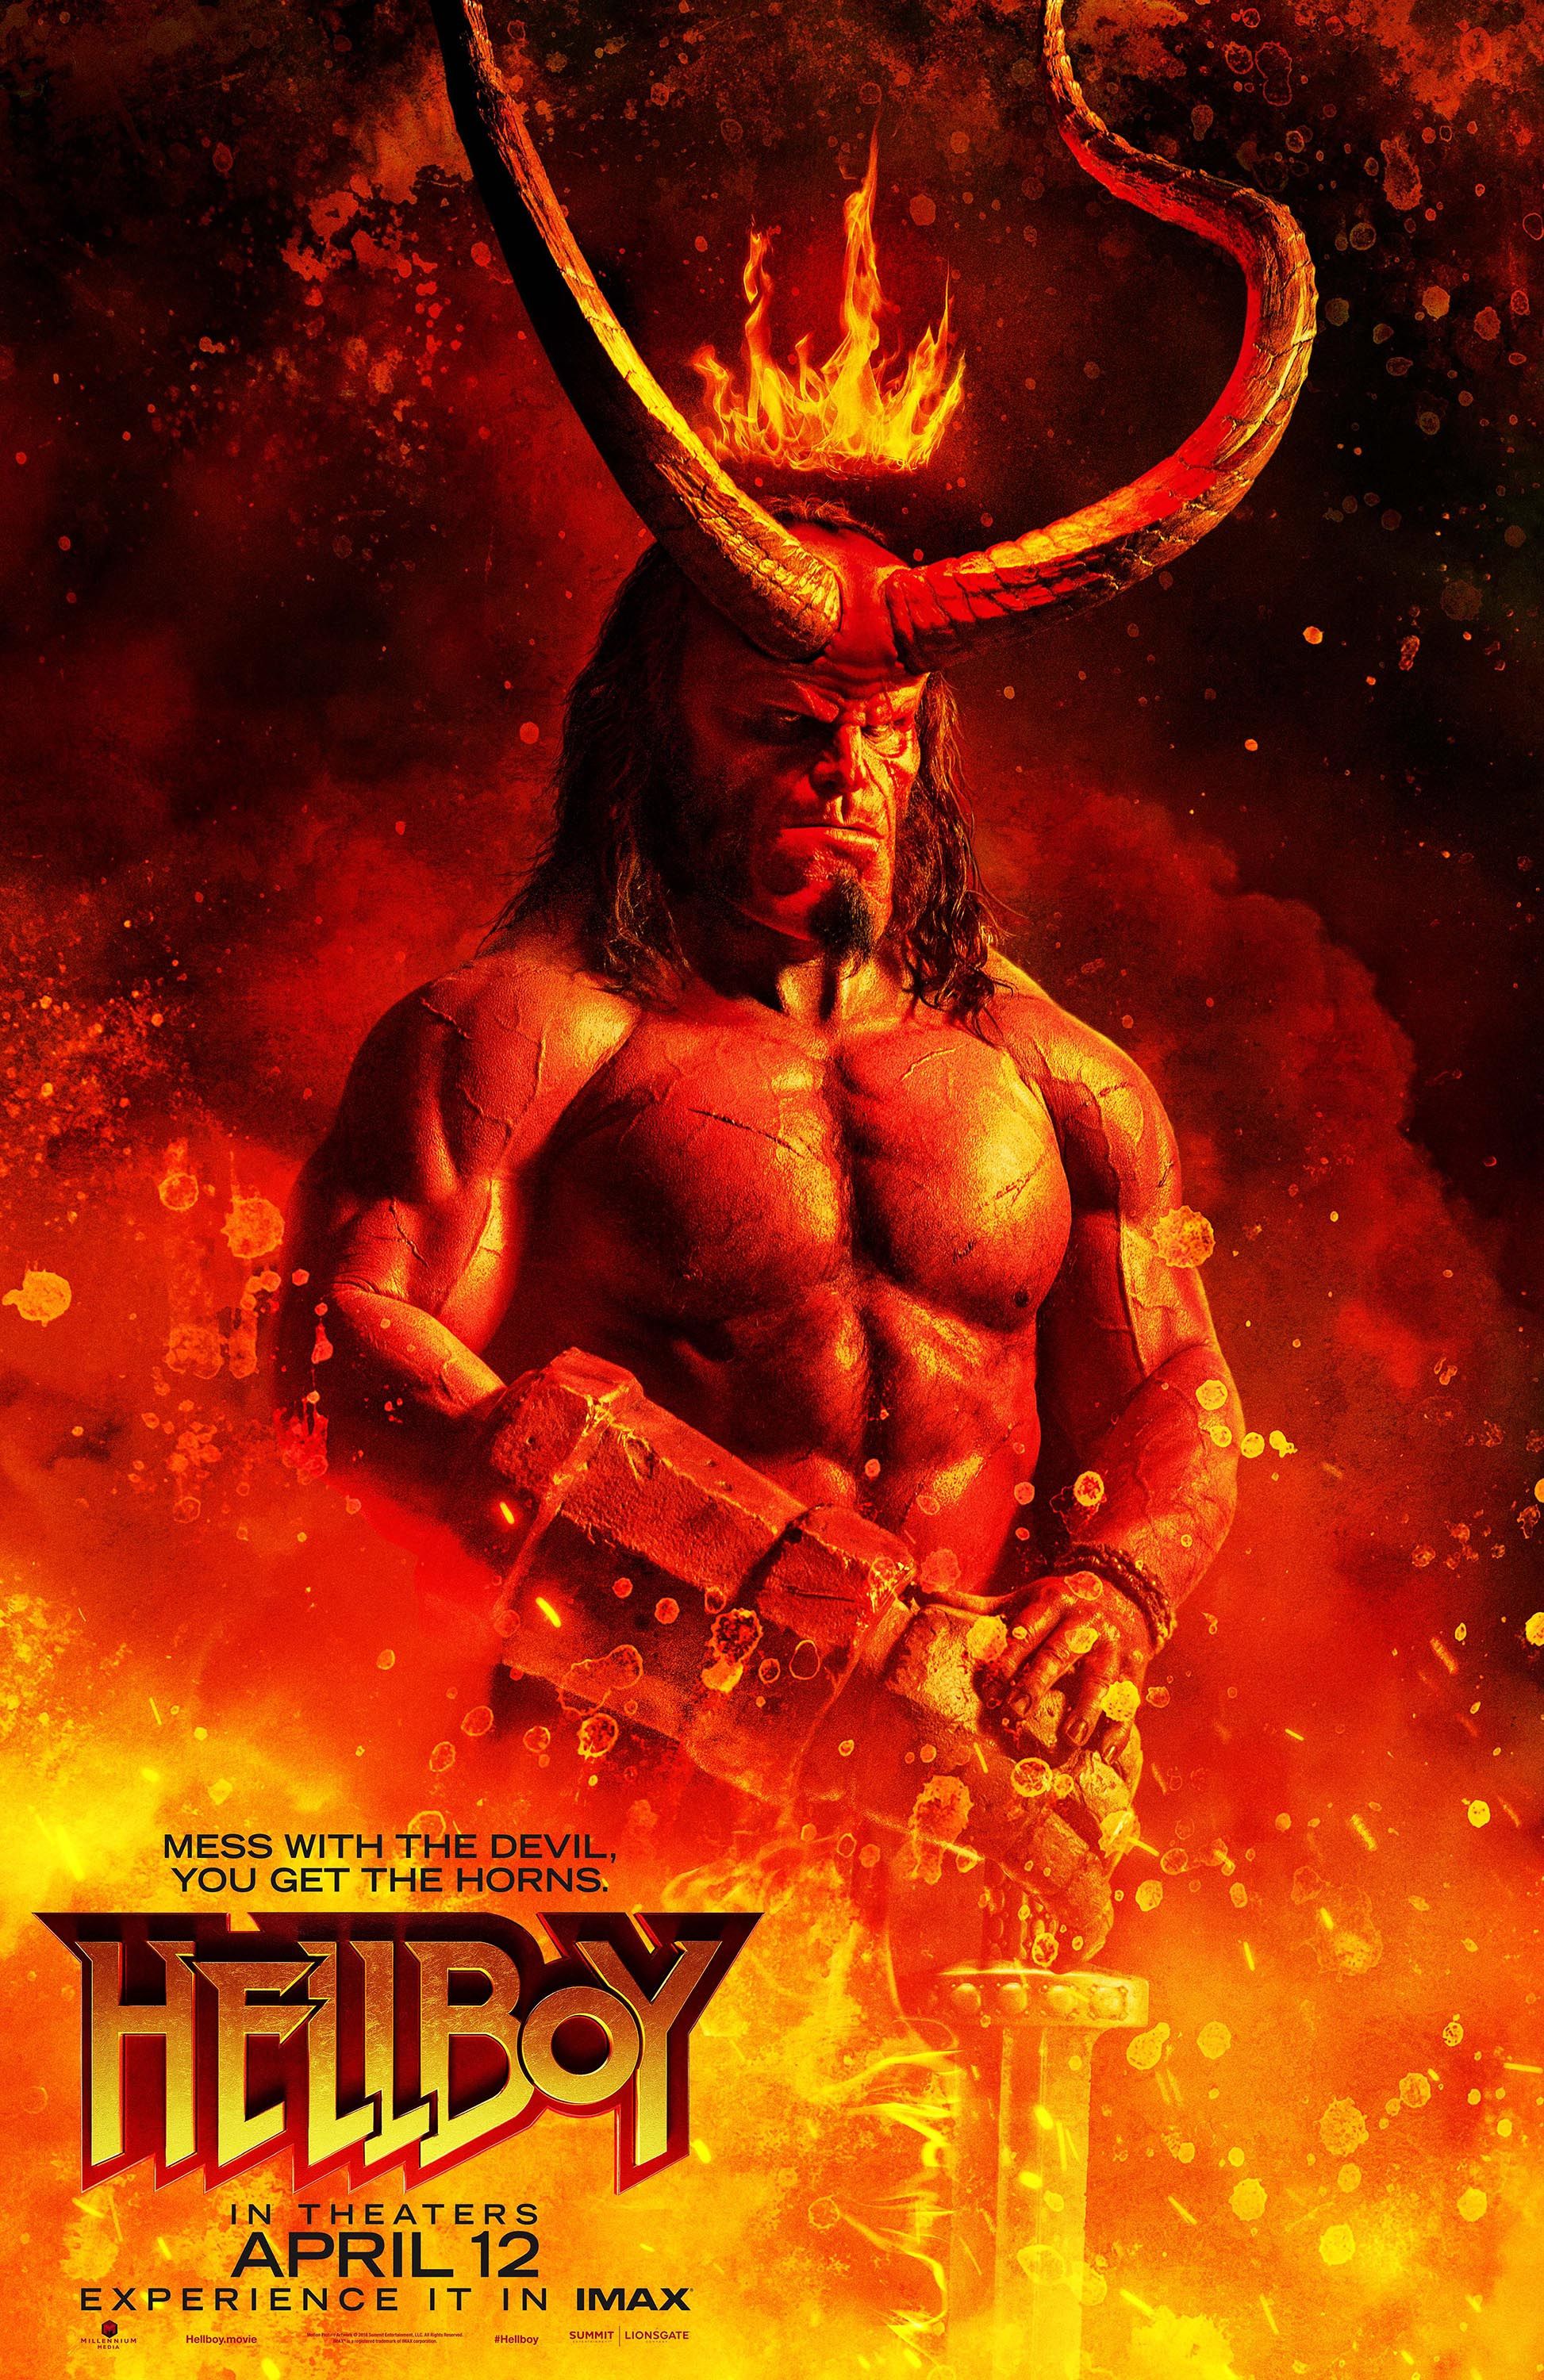 Stiahni si Filmy Kamera Hellboy CZ [kino] (2019) = CSFD 59%